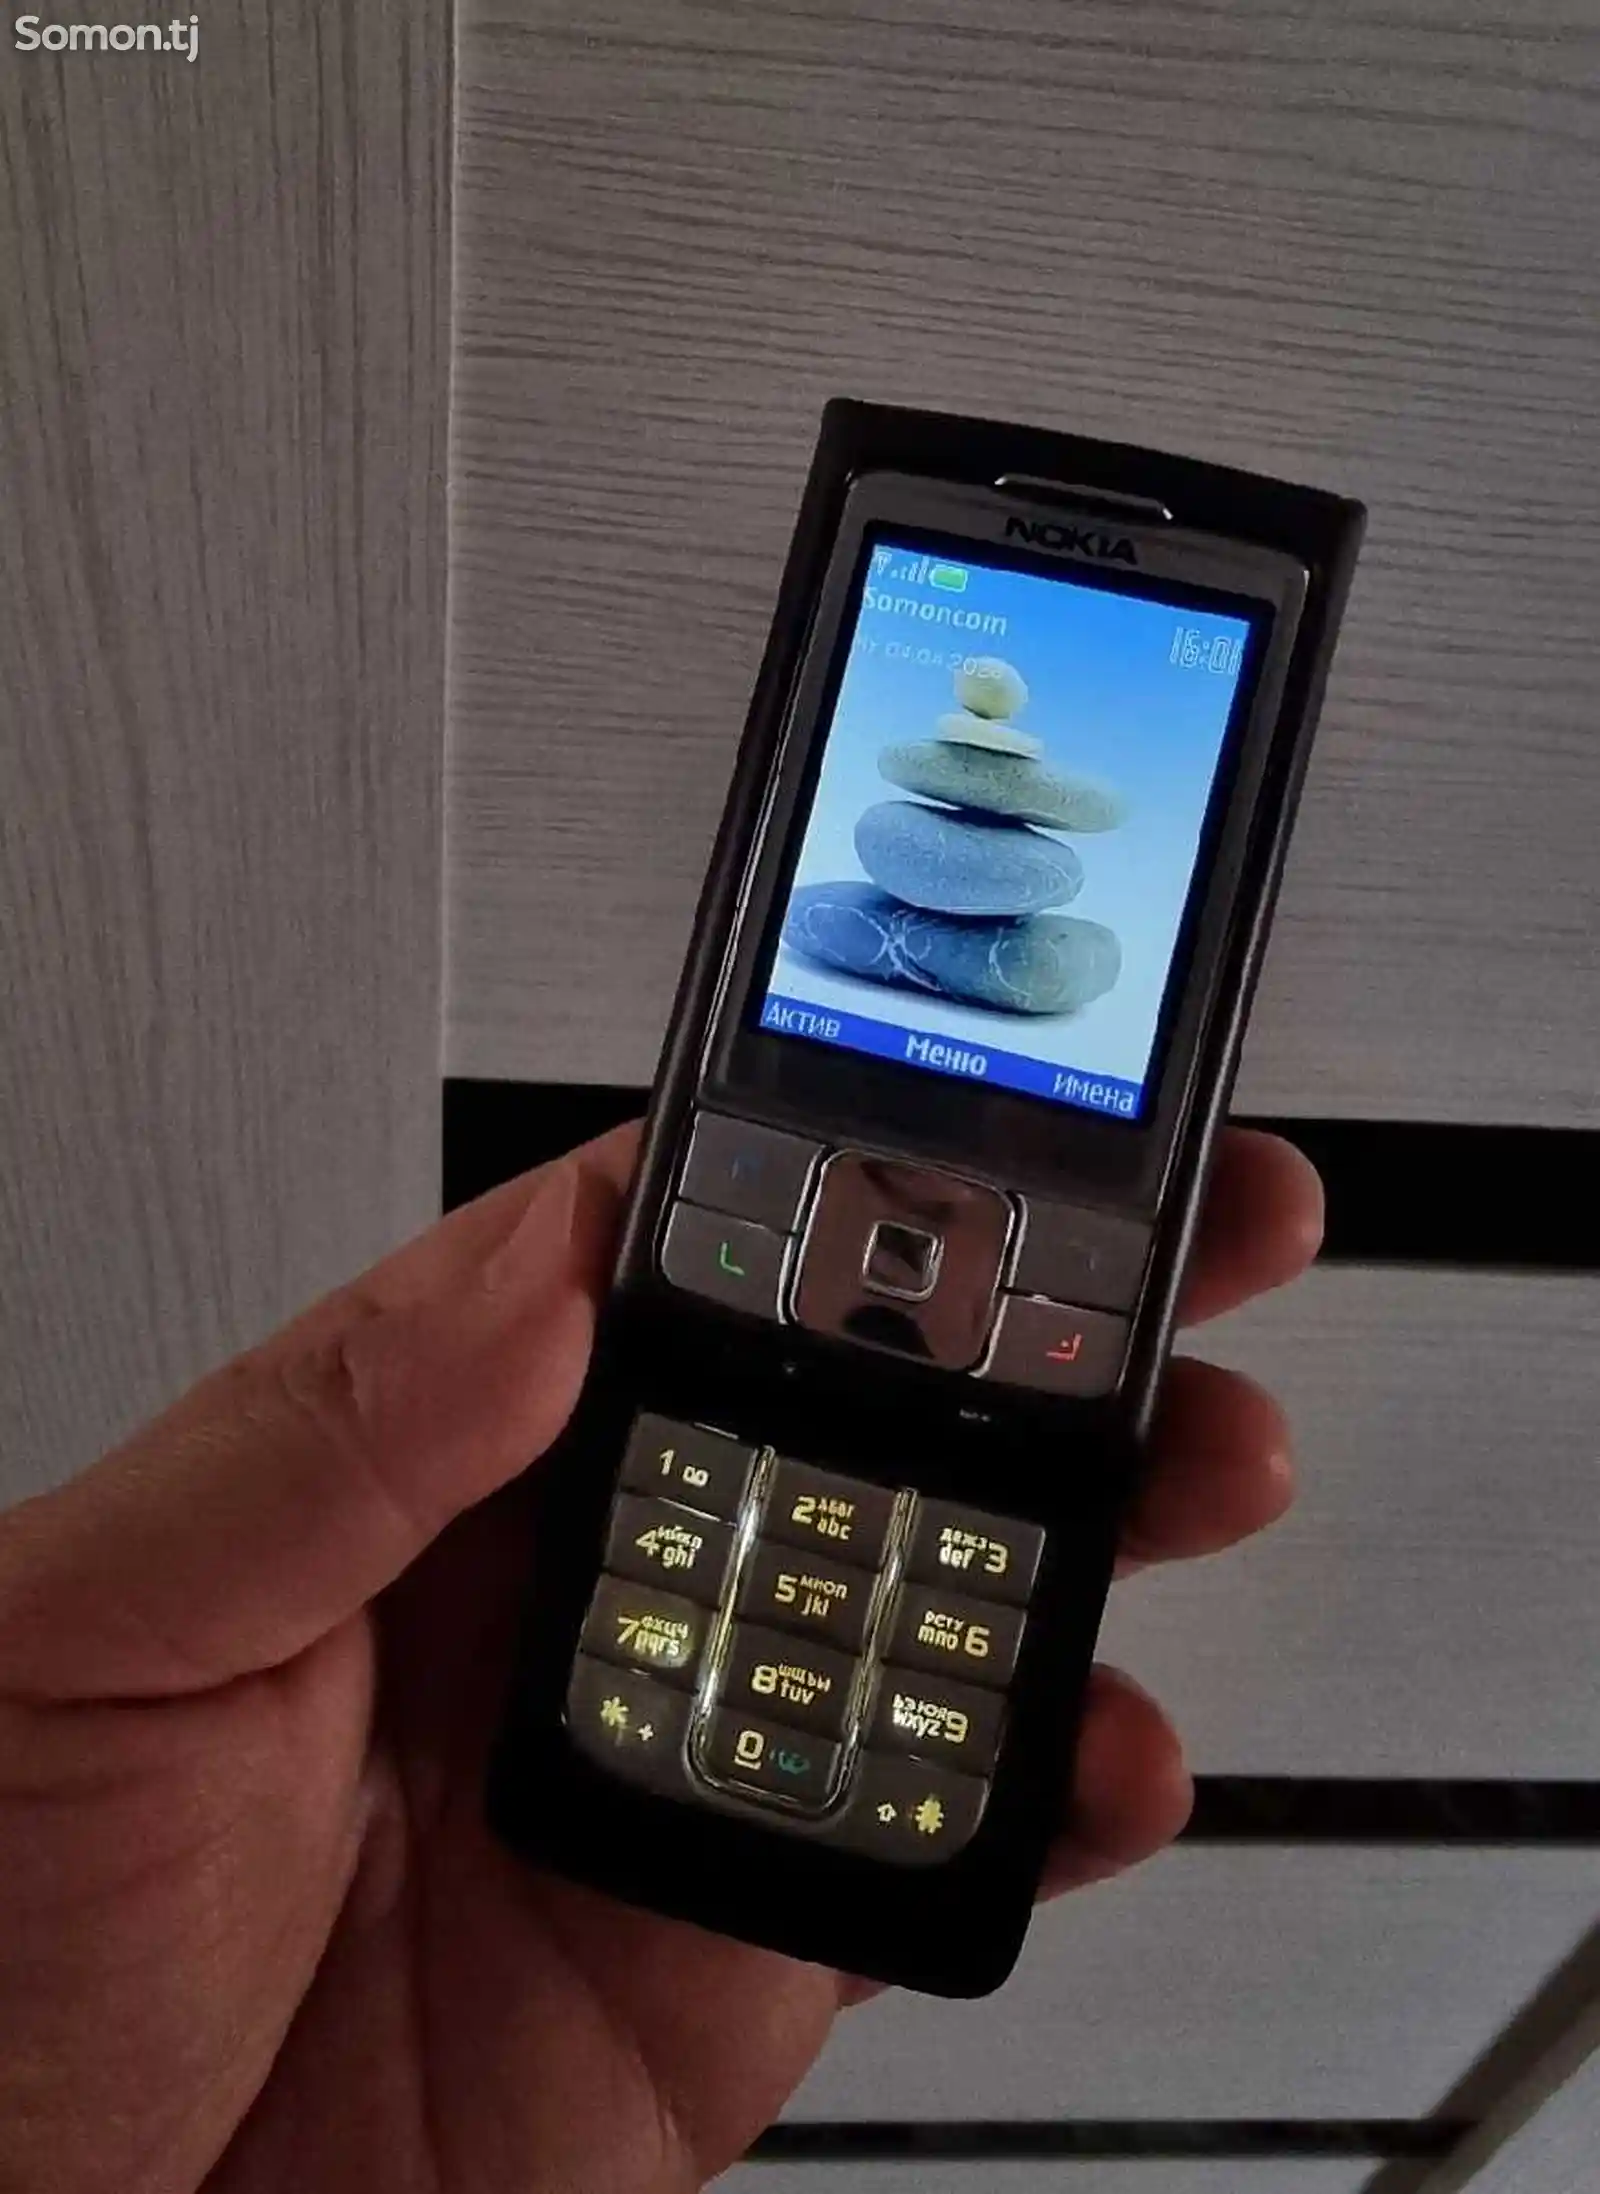 Nokia 6270-3